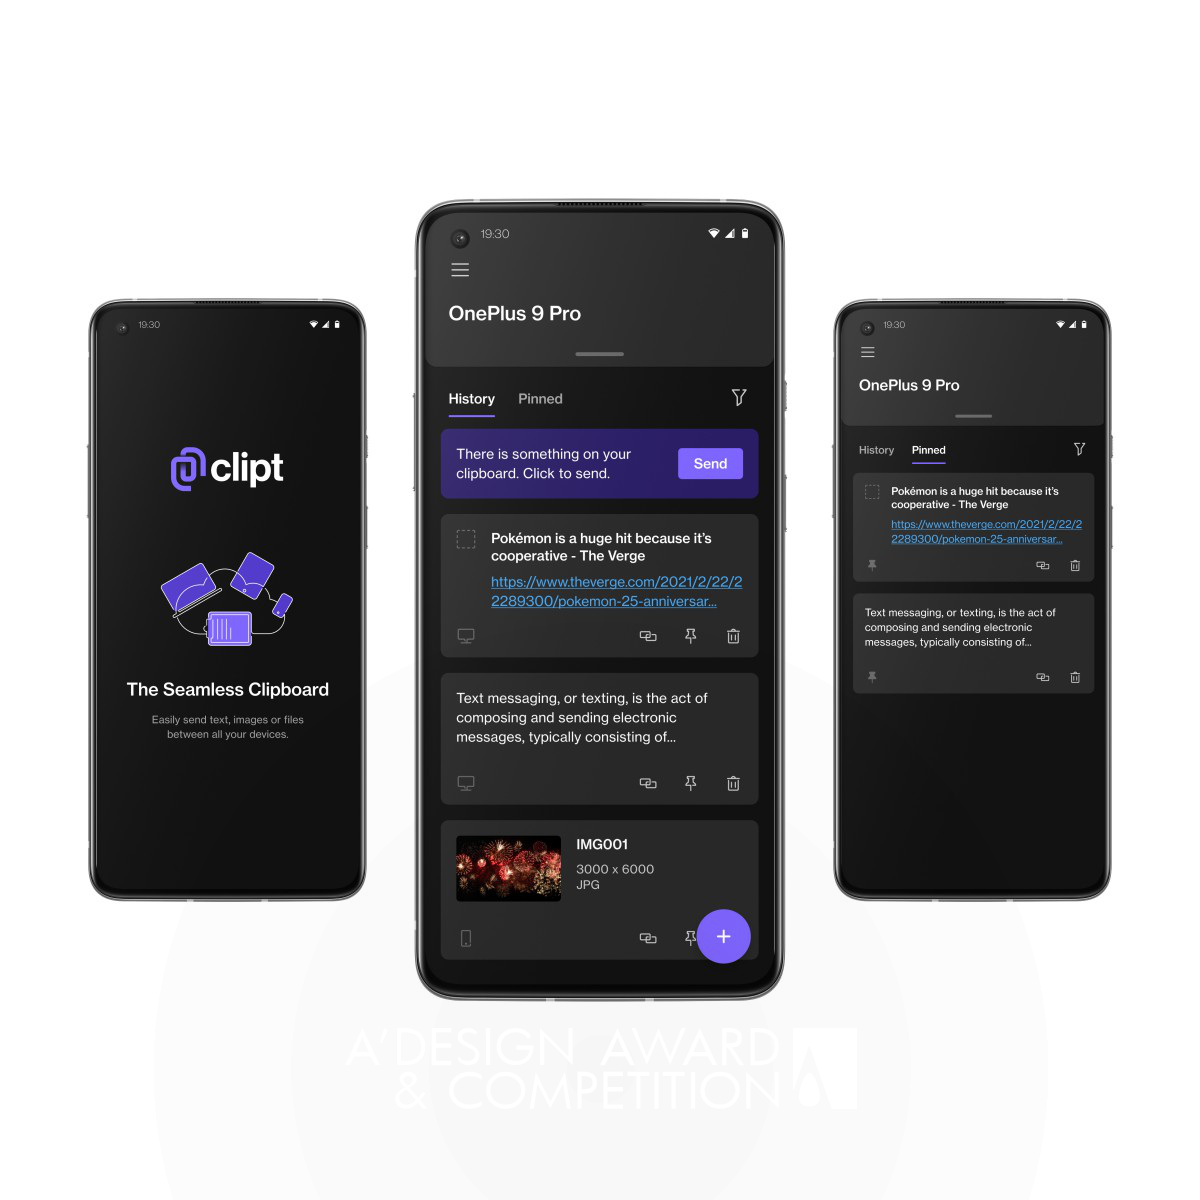 Clipt: Teknolojiyi Kullanarak Cihazlar Arasında Sorunsuz Bağlantı